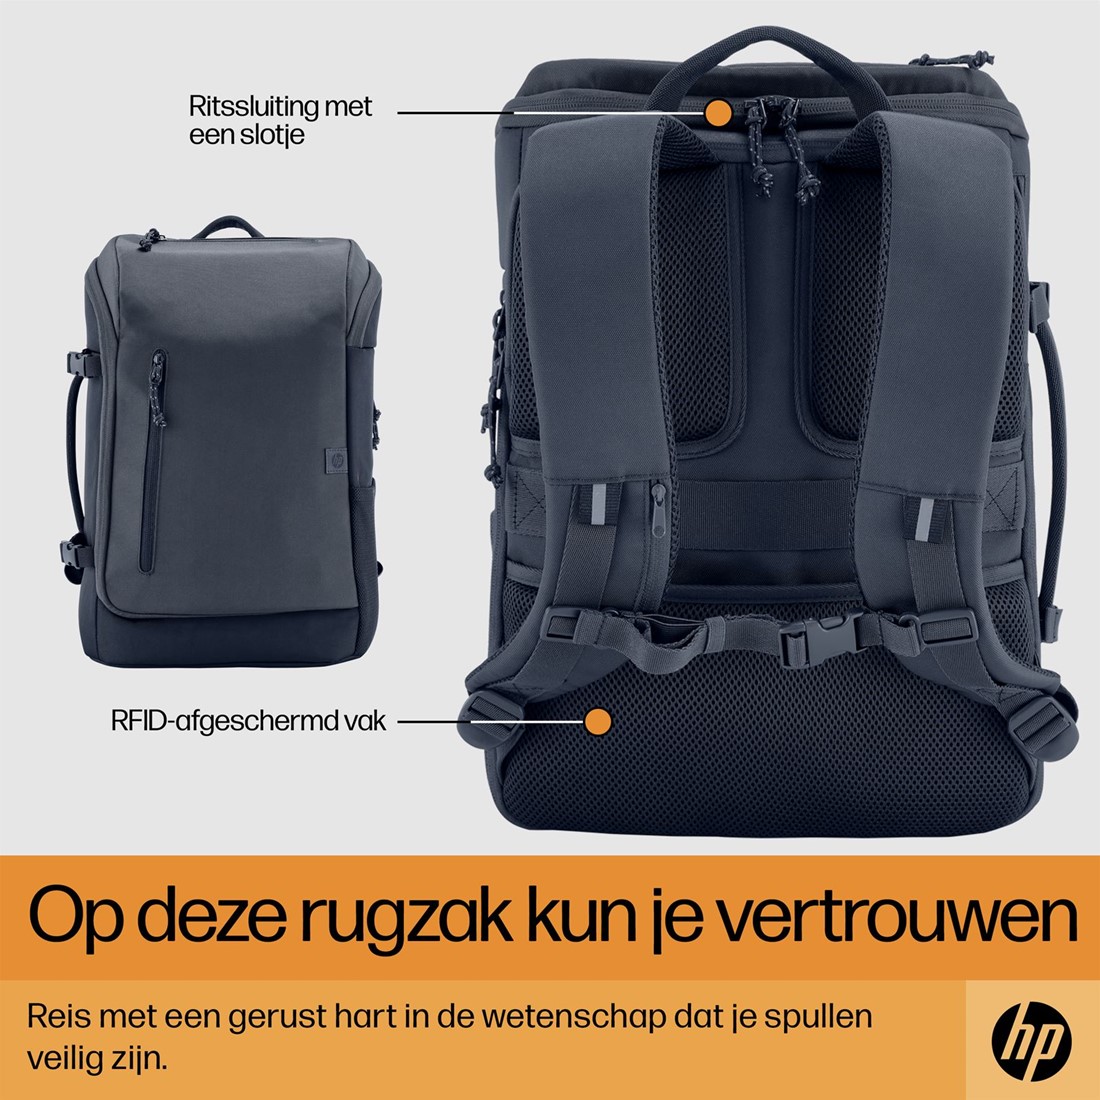 belediging ethiek Bloedbad HP Travel 25 Liter 15.6 Iron Grey Laptop Backpack bij ICT-Store.nl